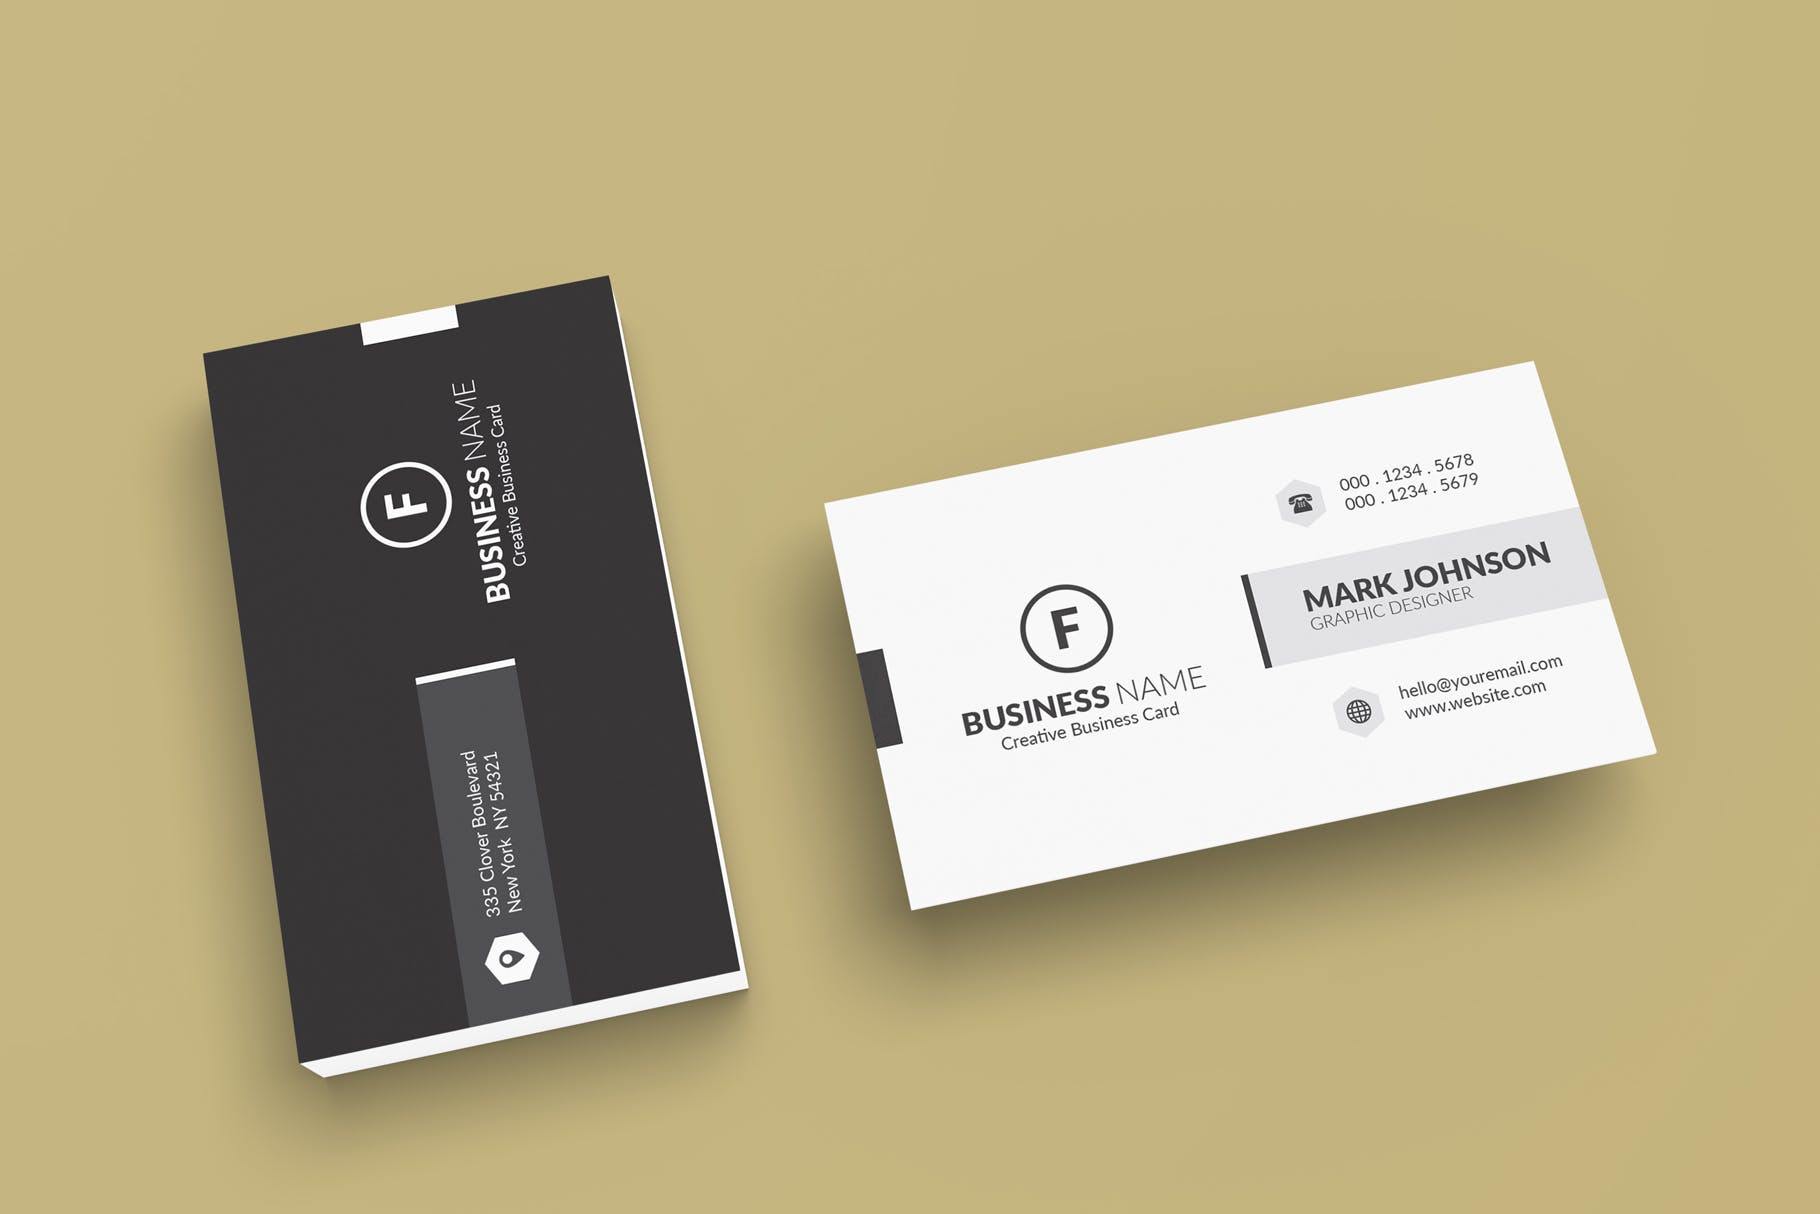 极简设计风格名片设计效果图第一素材精选 Minimalist Business Cards Mockup插图(3)